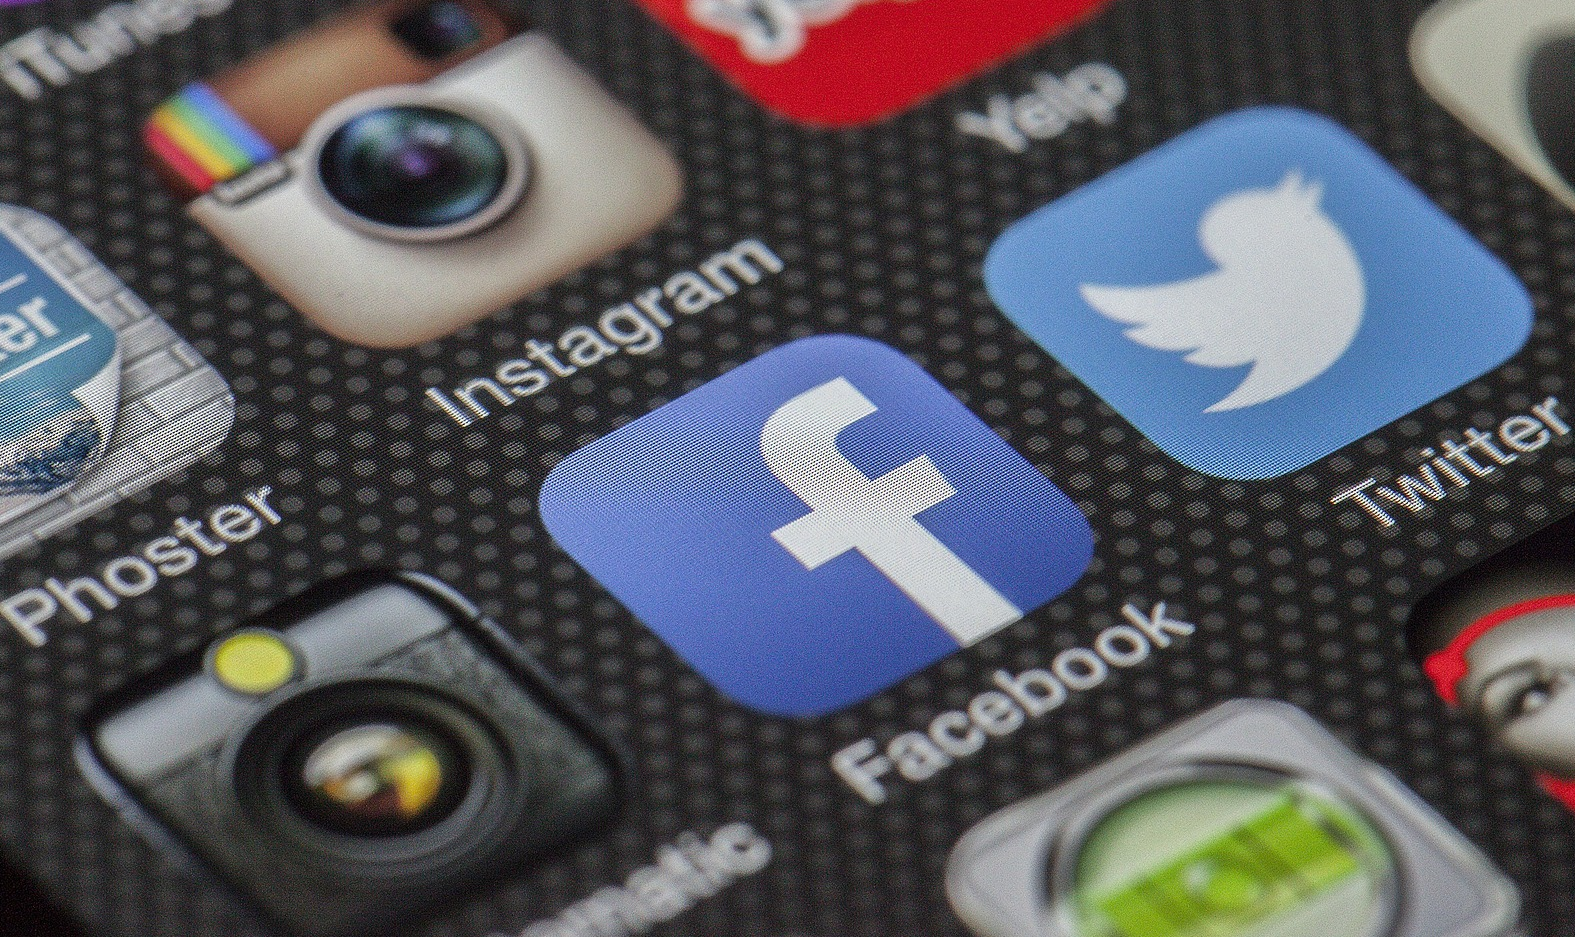 Segundo órgão regulador, medida foi tomada como resposta às restrições impostas pela rede social a veículos de comunicação russos